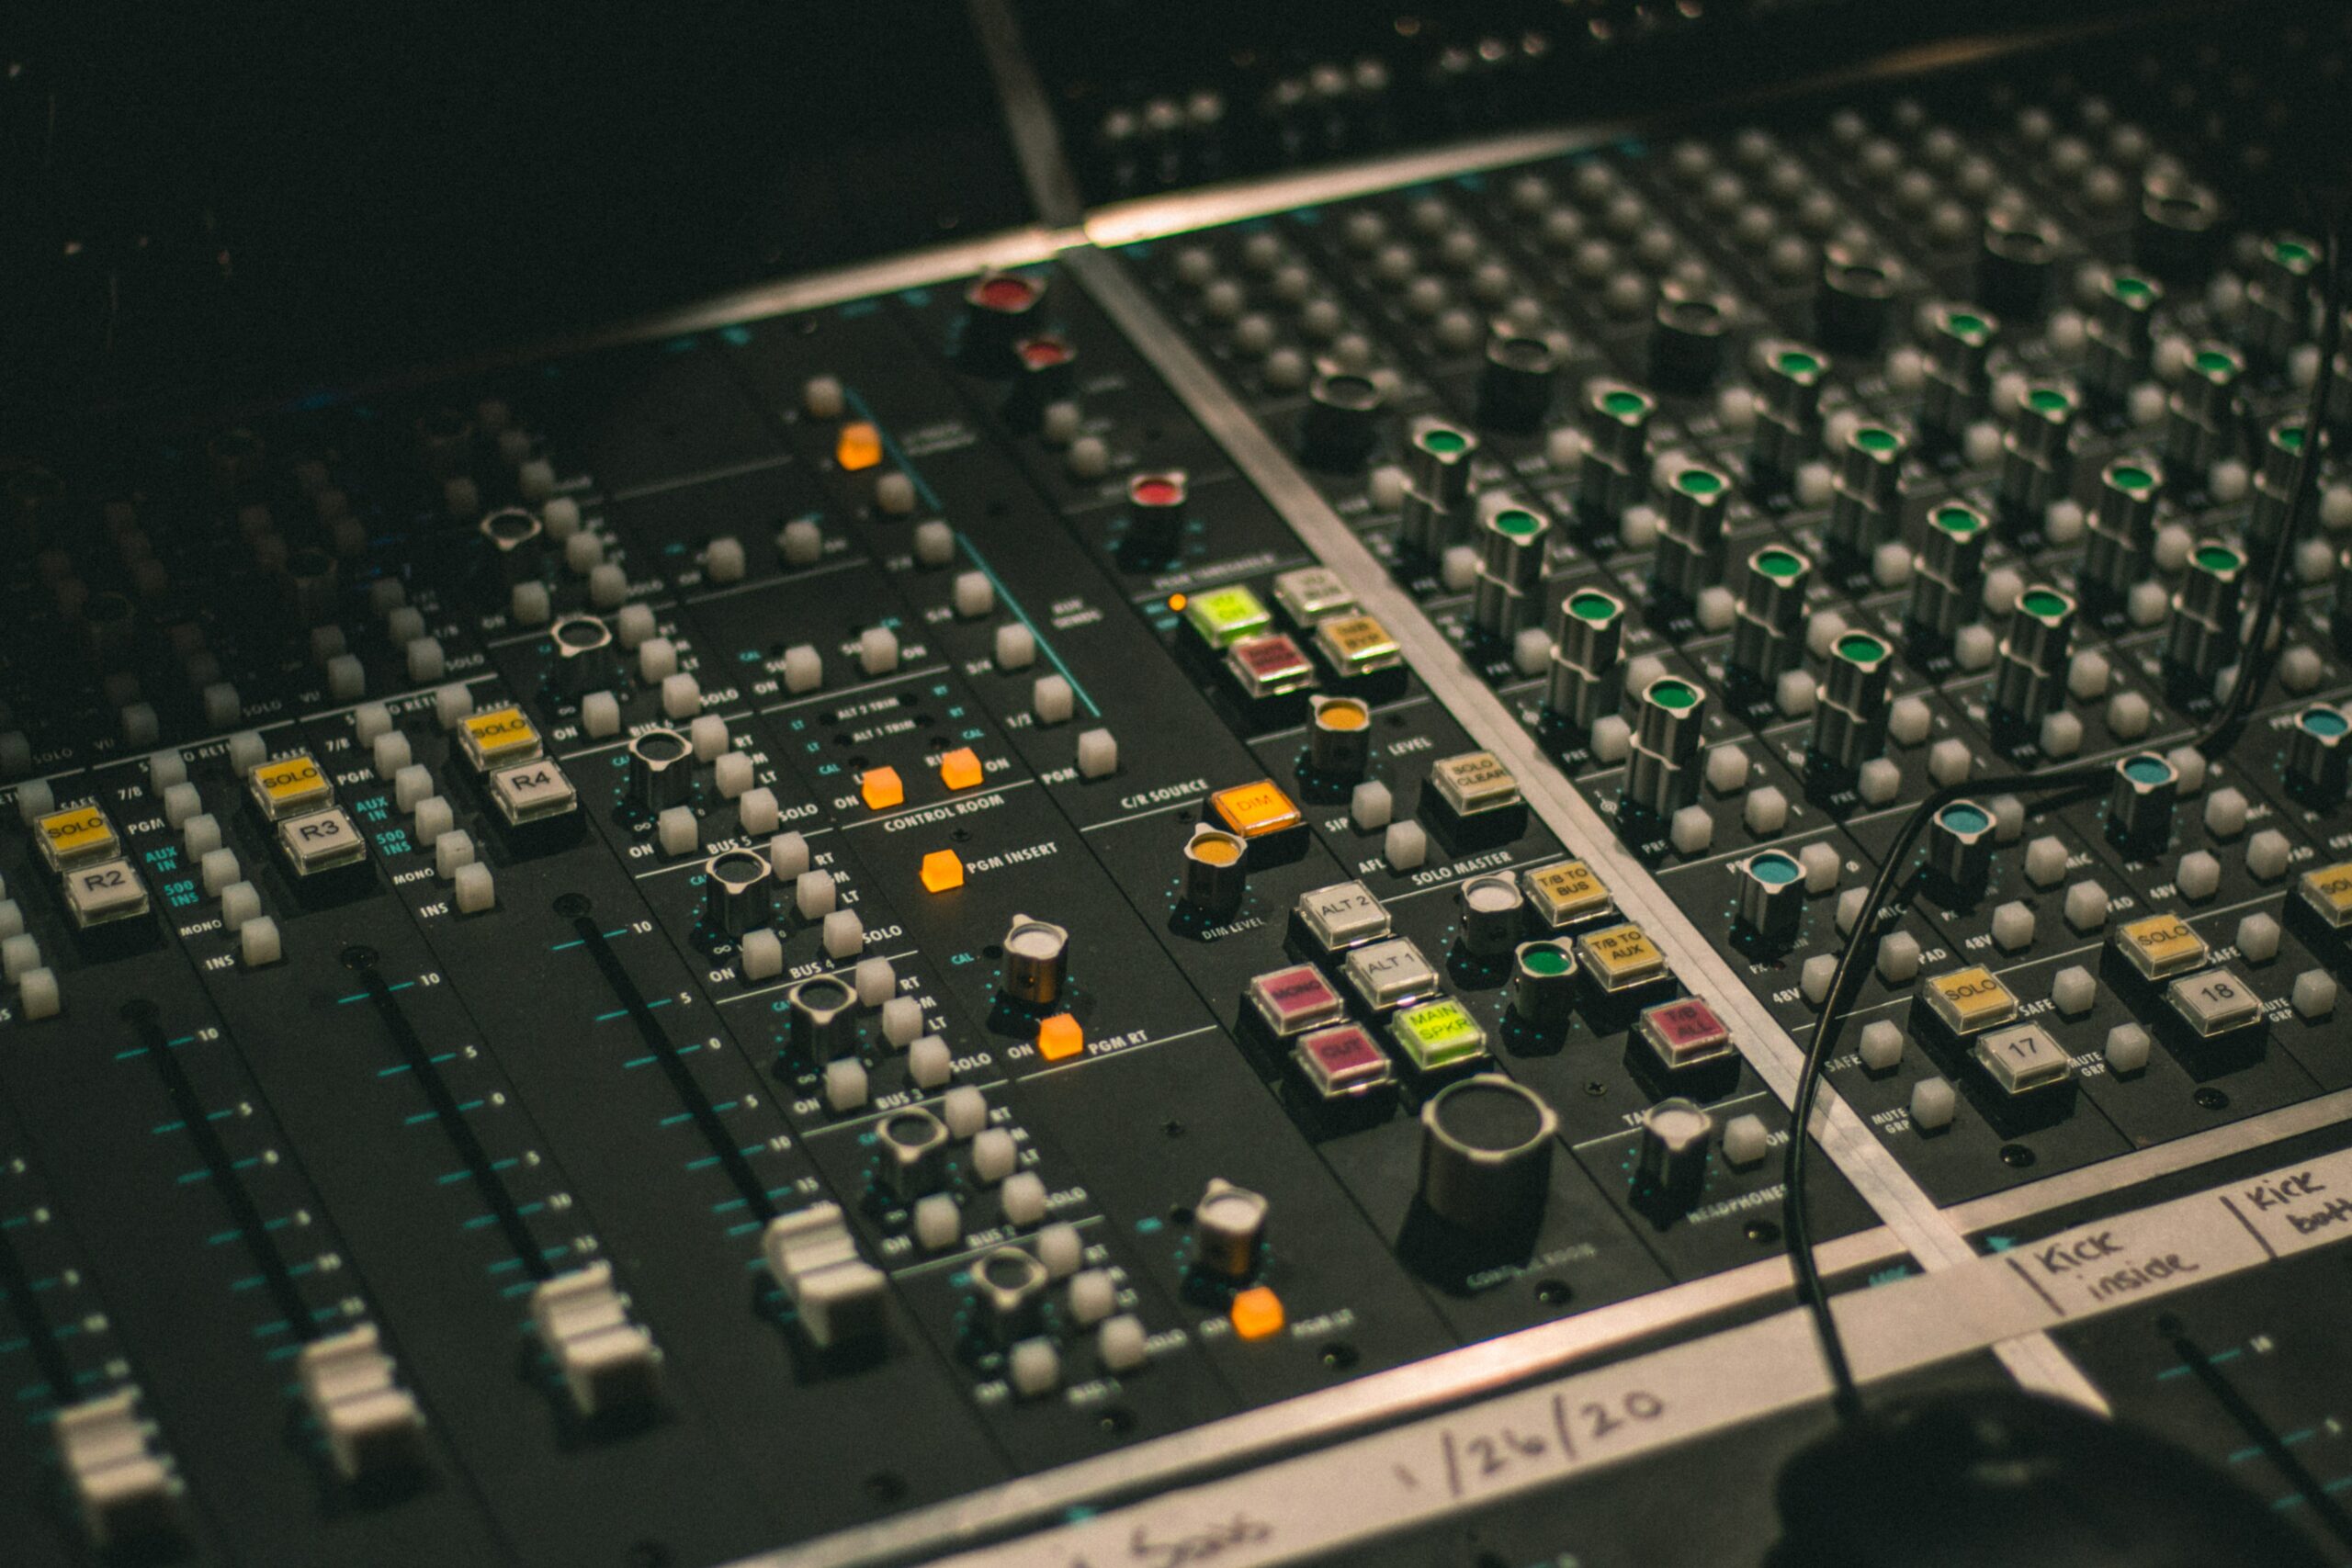 console de mixage illustre les différences entre le mixing et le mastering